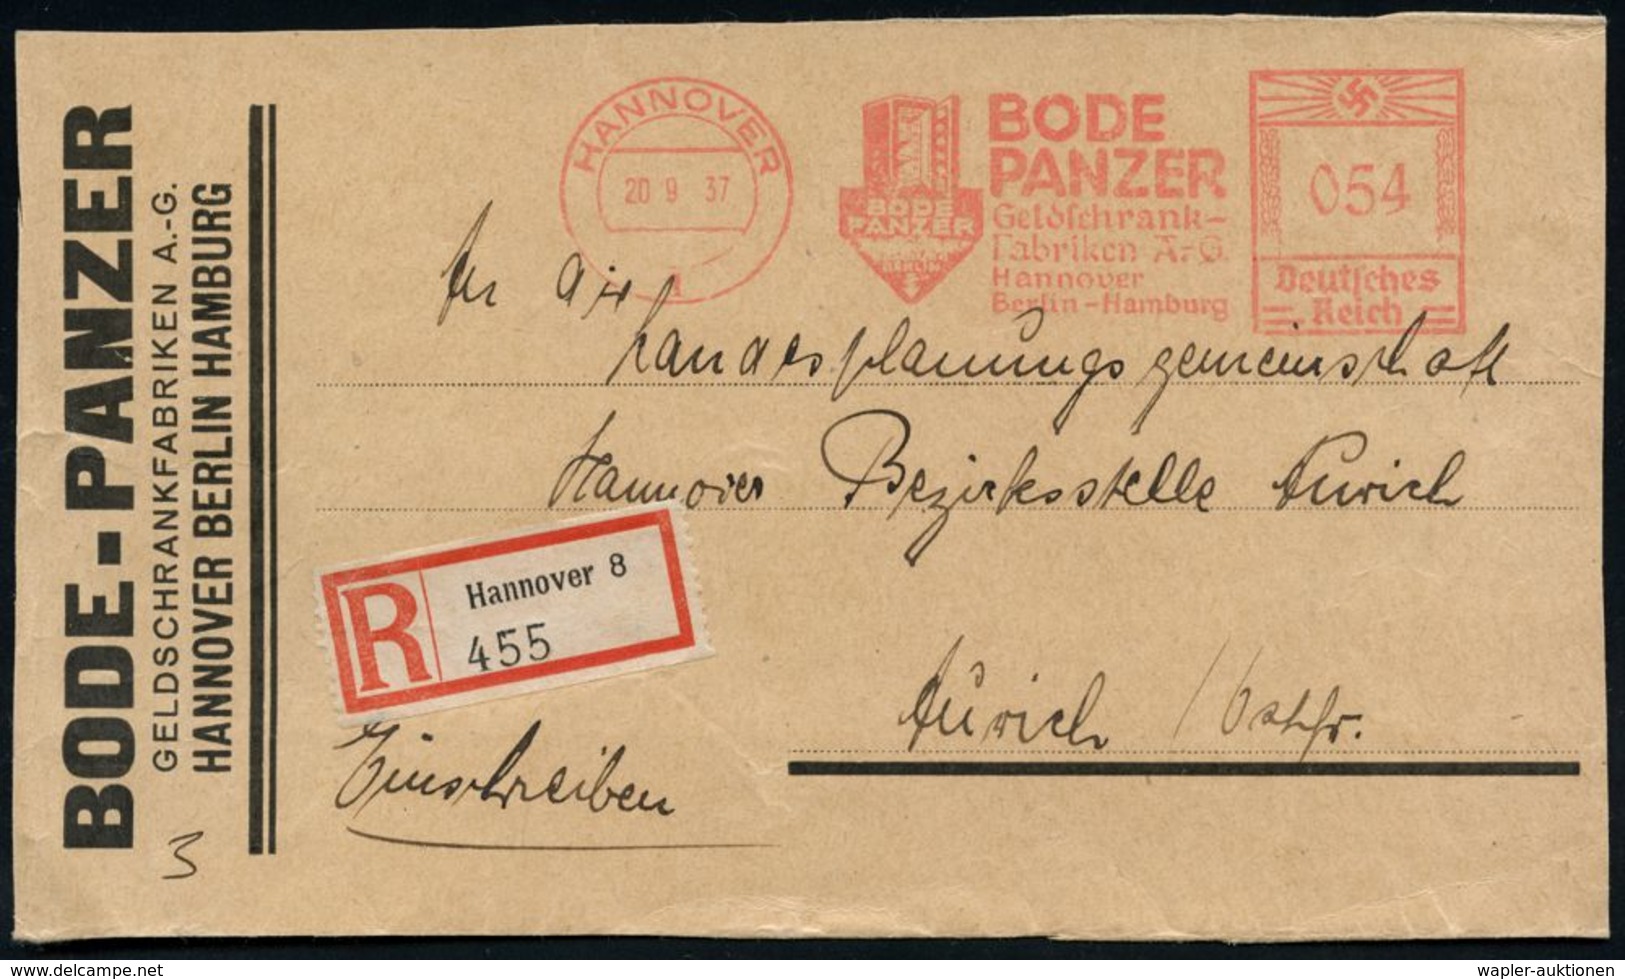 NUMISPHILATELIE / GELDSCHEINE / MÜNZEN : HANNOVER/ 1/ BODE/ PANZER/ Geldschrank-/ Fabriken AG.. 1937 (20.9.) AFS 054 Pf. - Unclassified